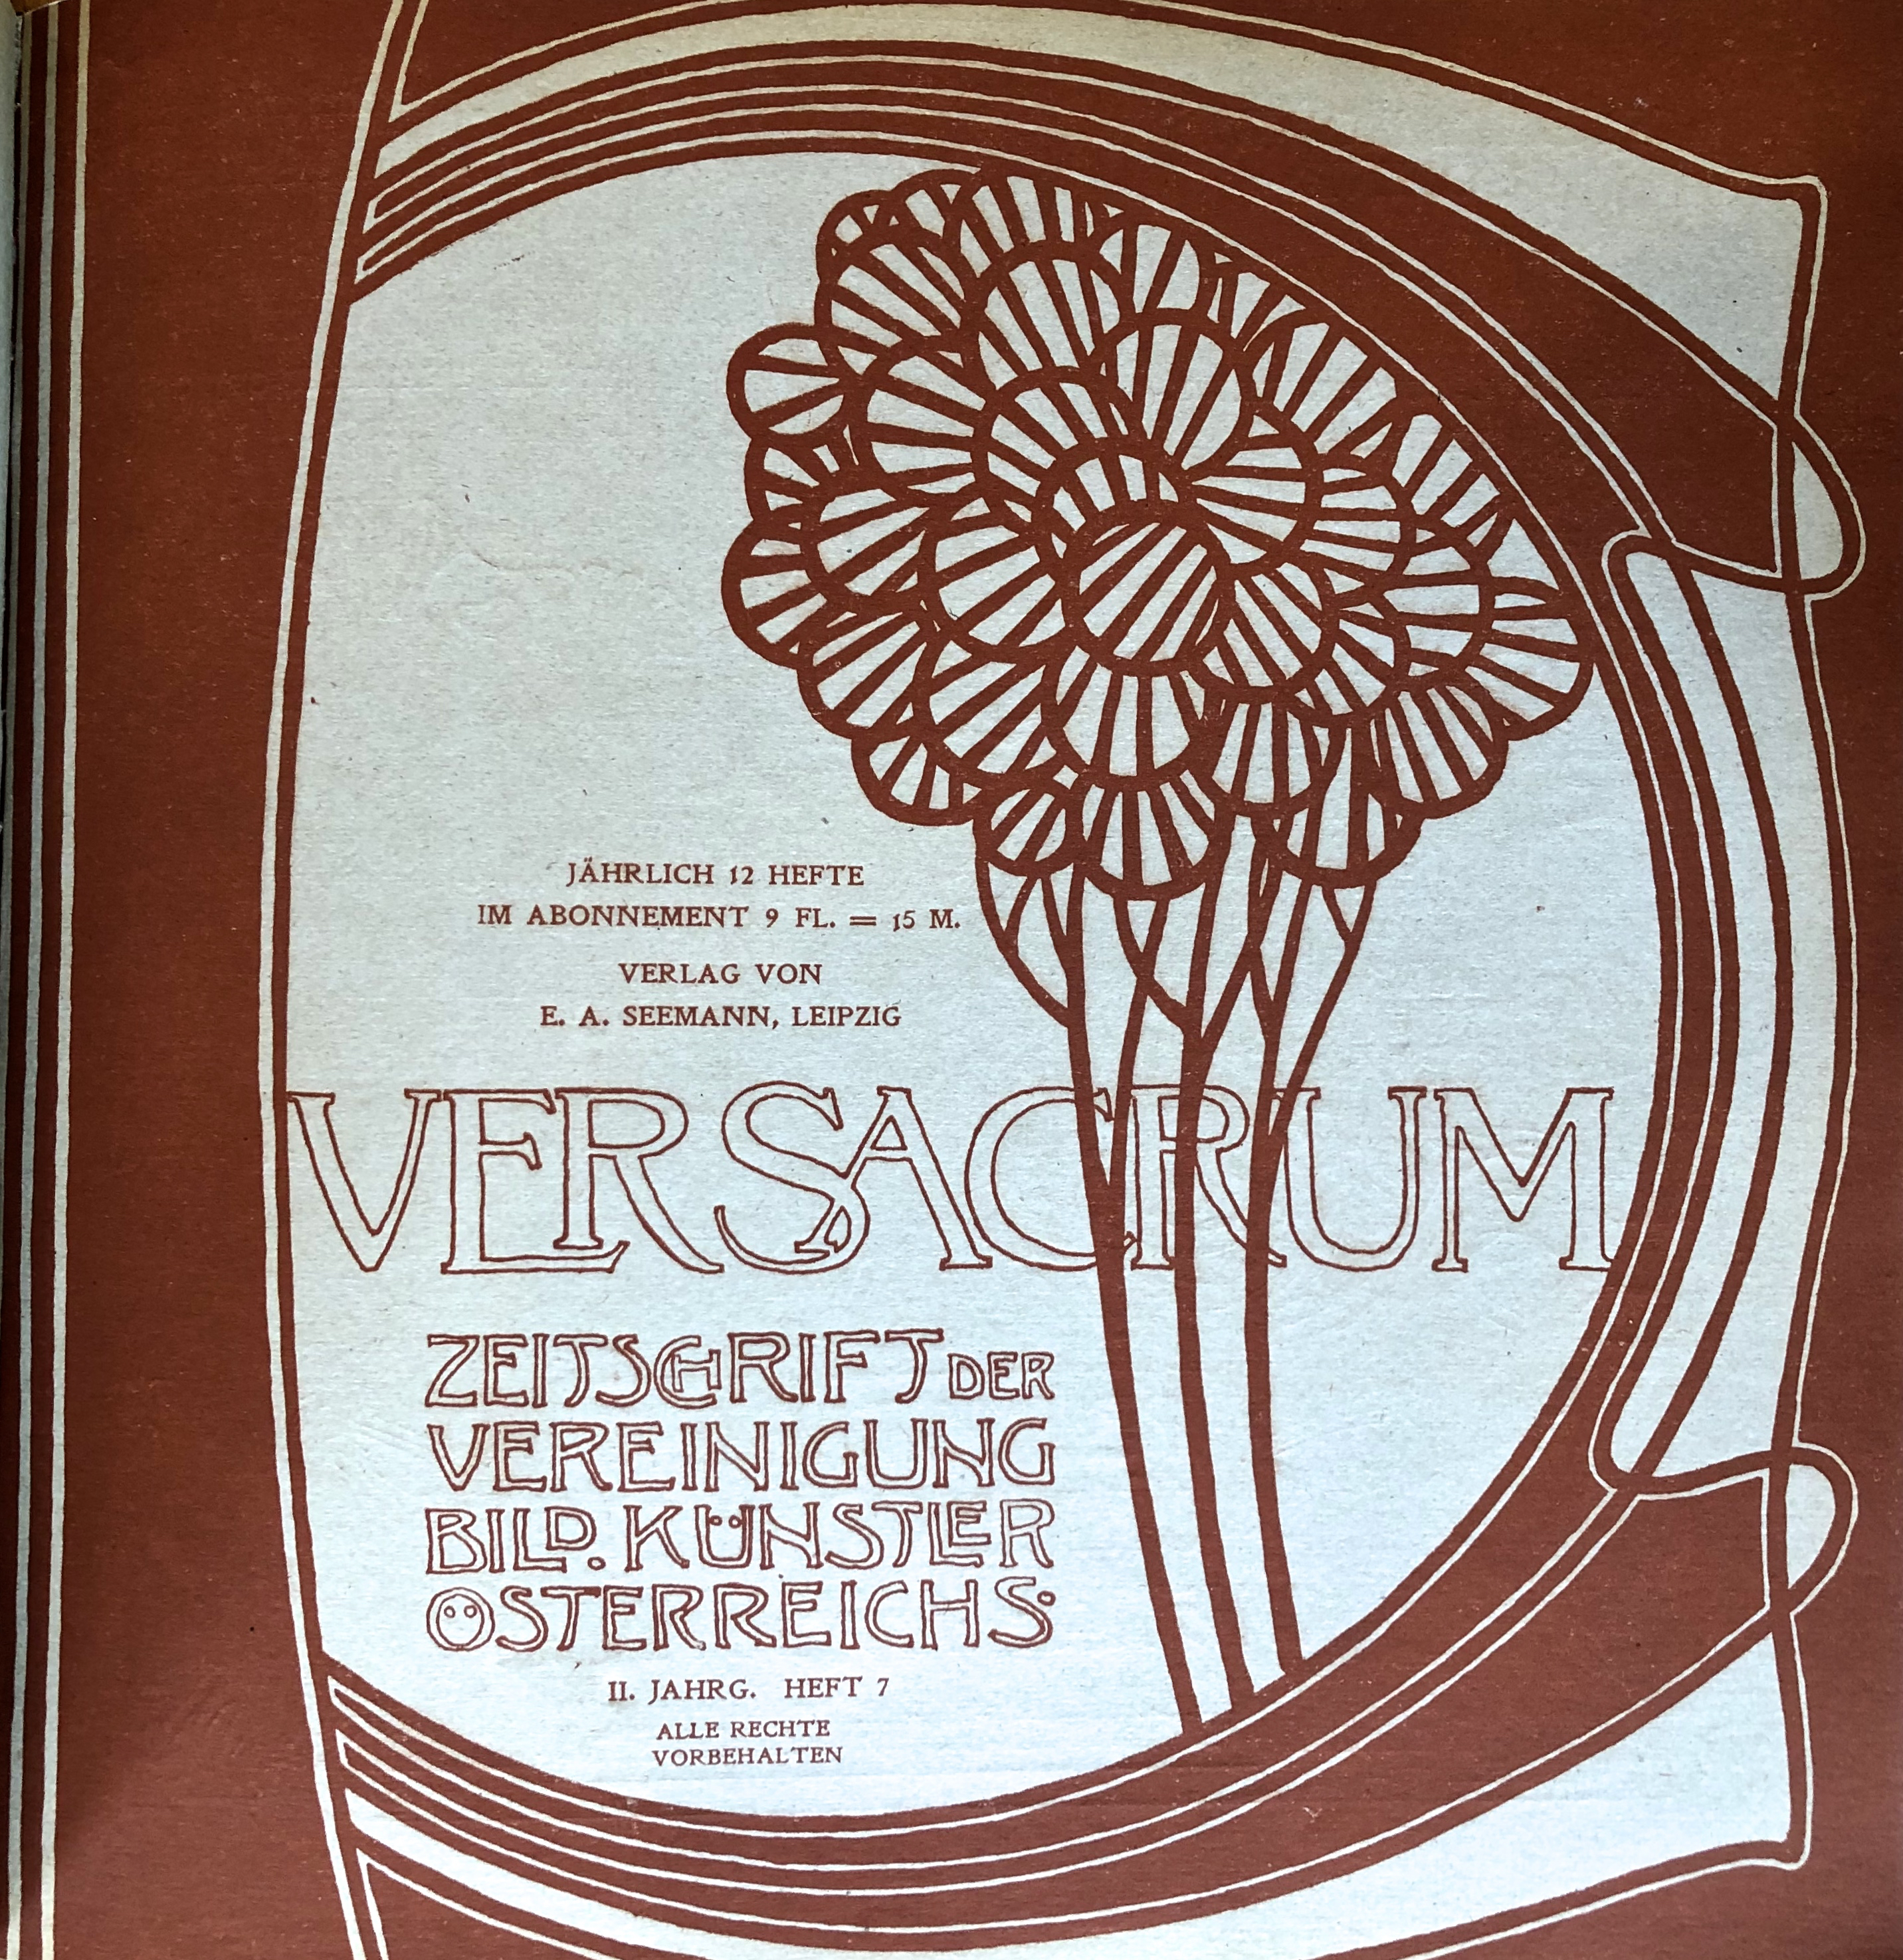 Two Years of Ver Sacrum Magazine